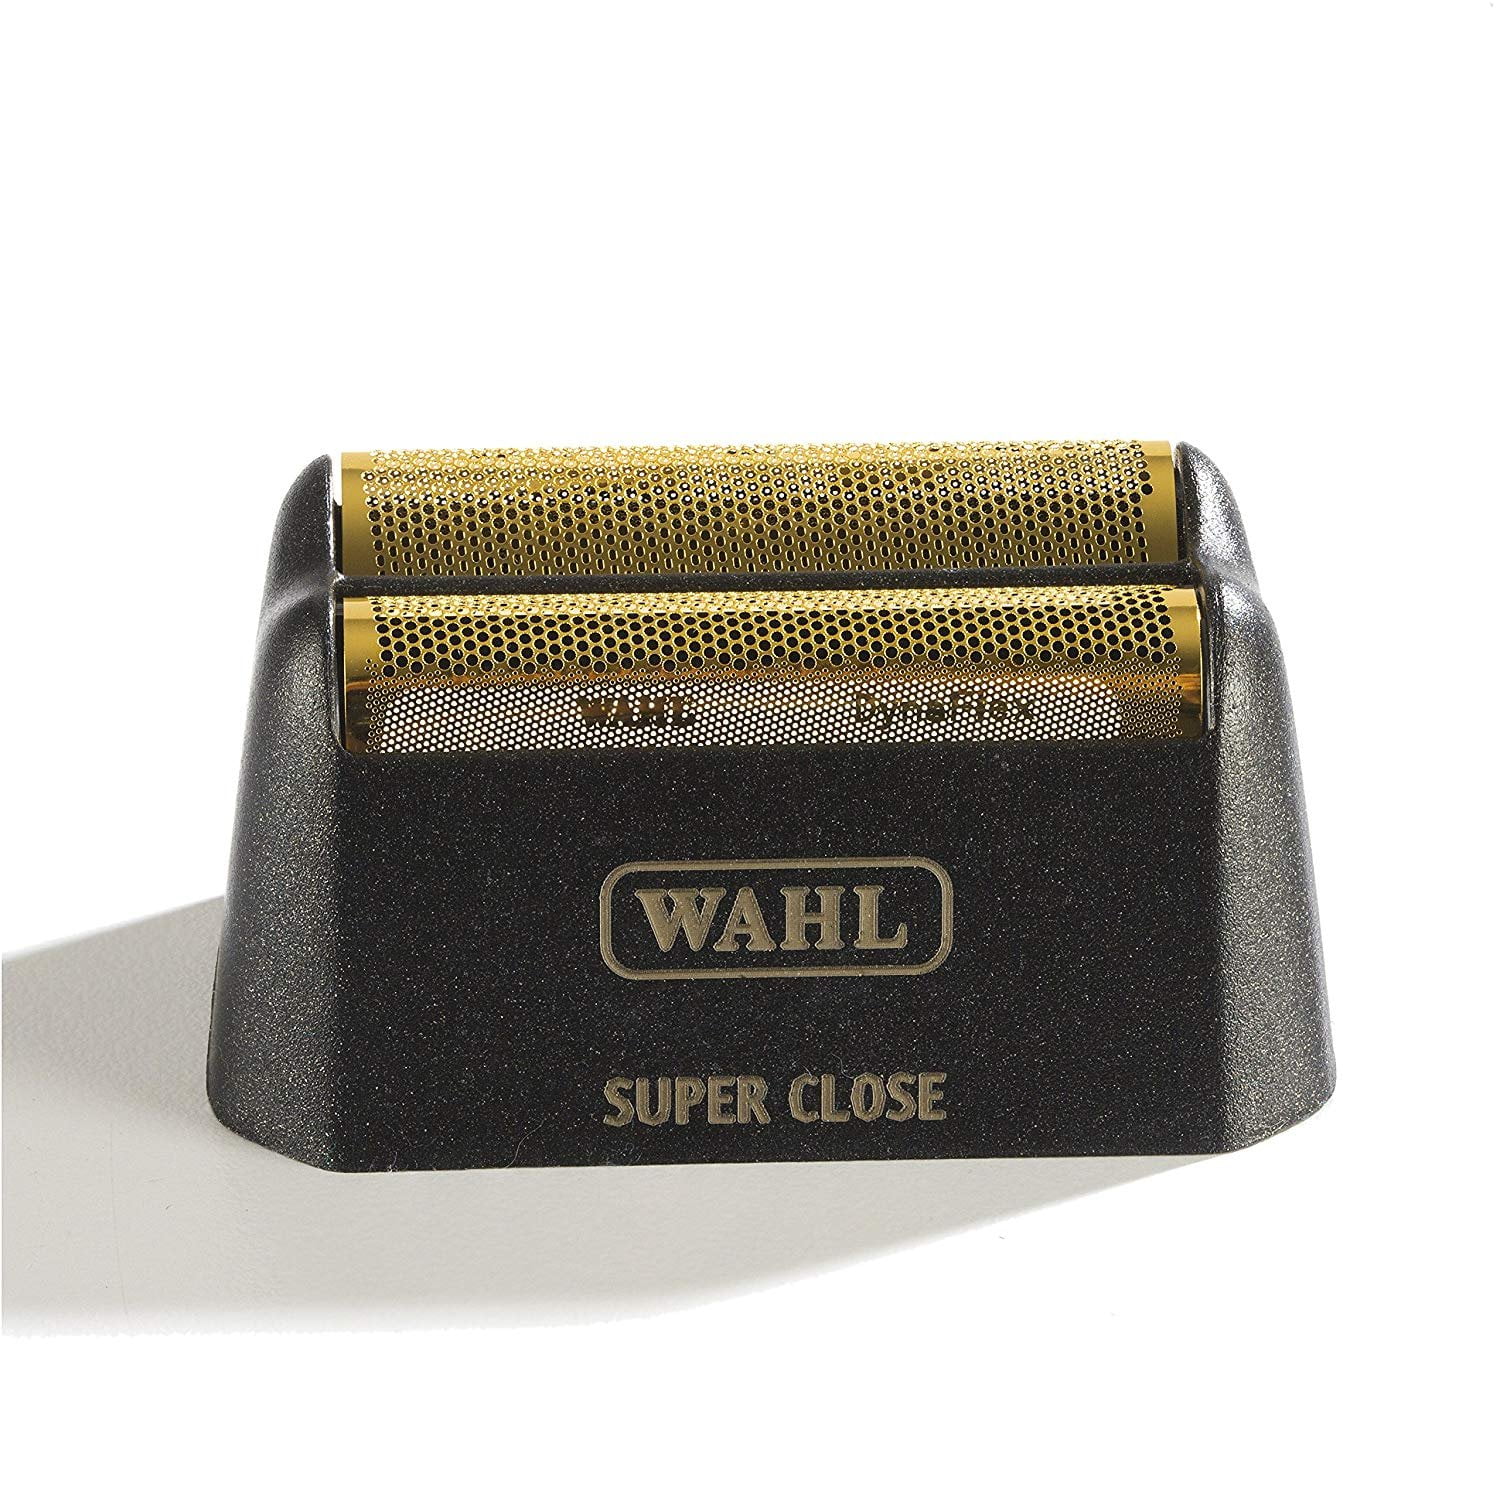 wahl super close foil replacement